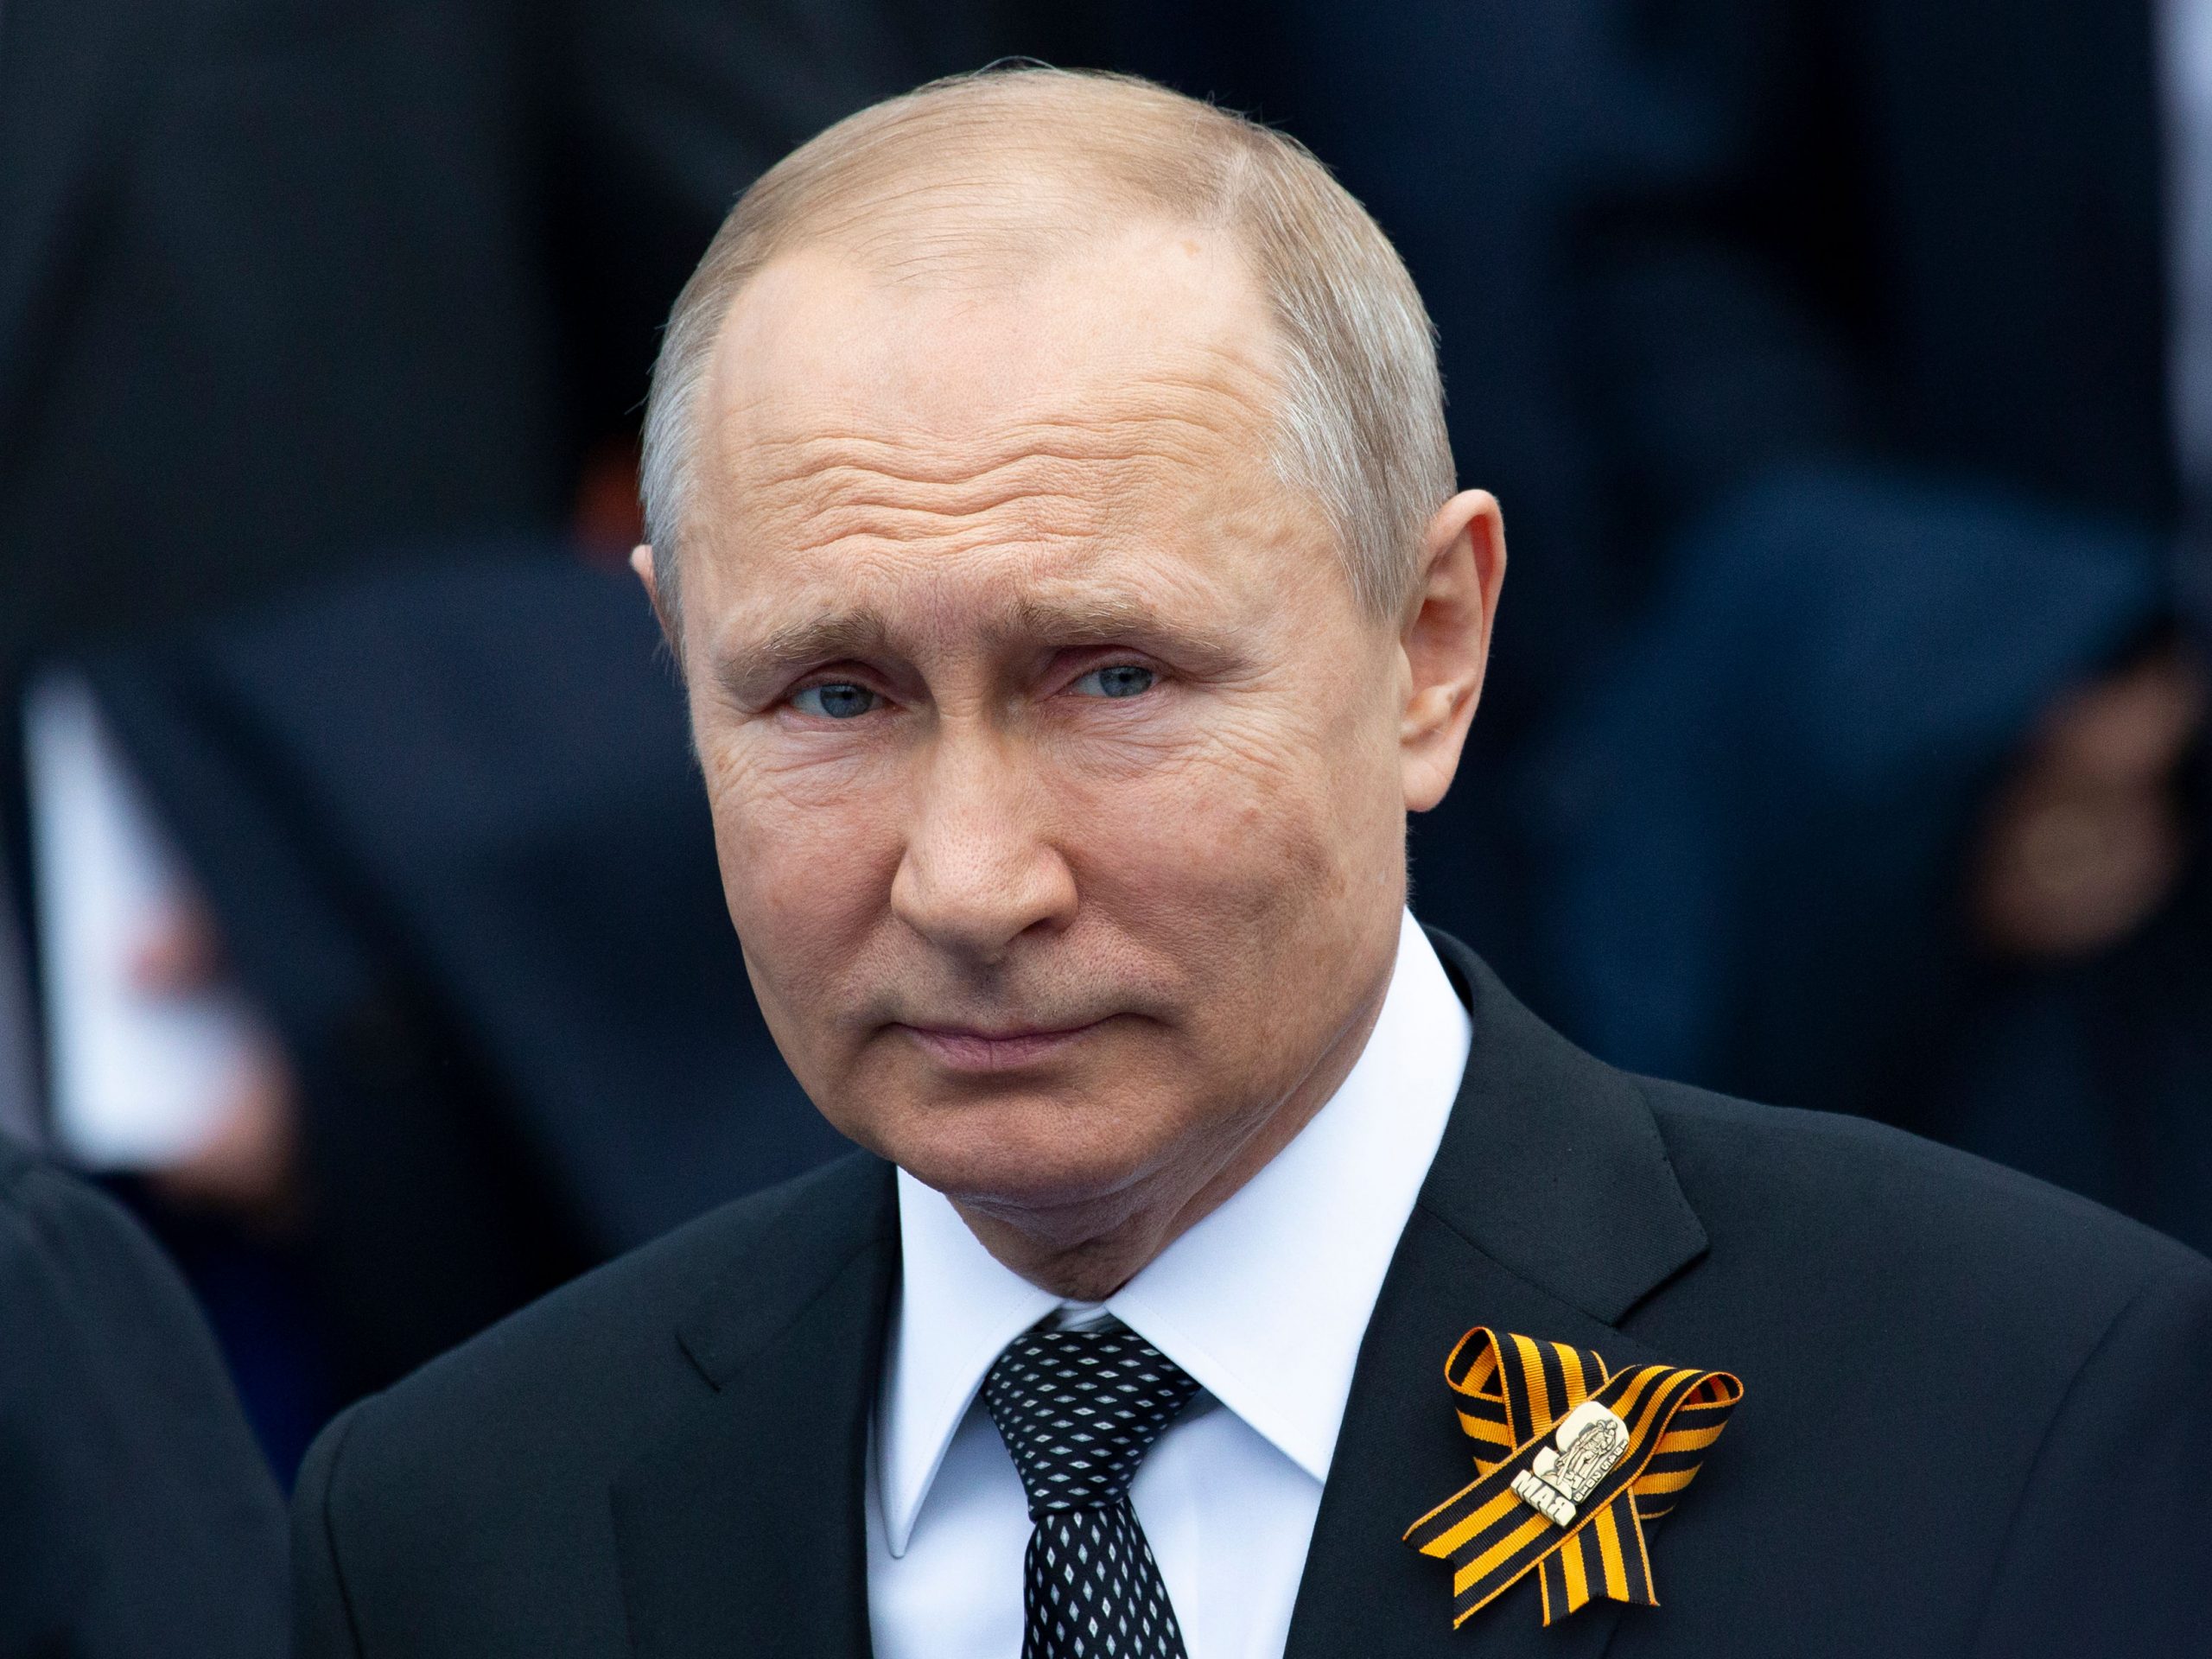 Vladimir Putin survived assassination attempt: Report